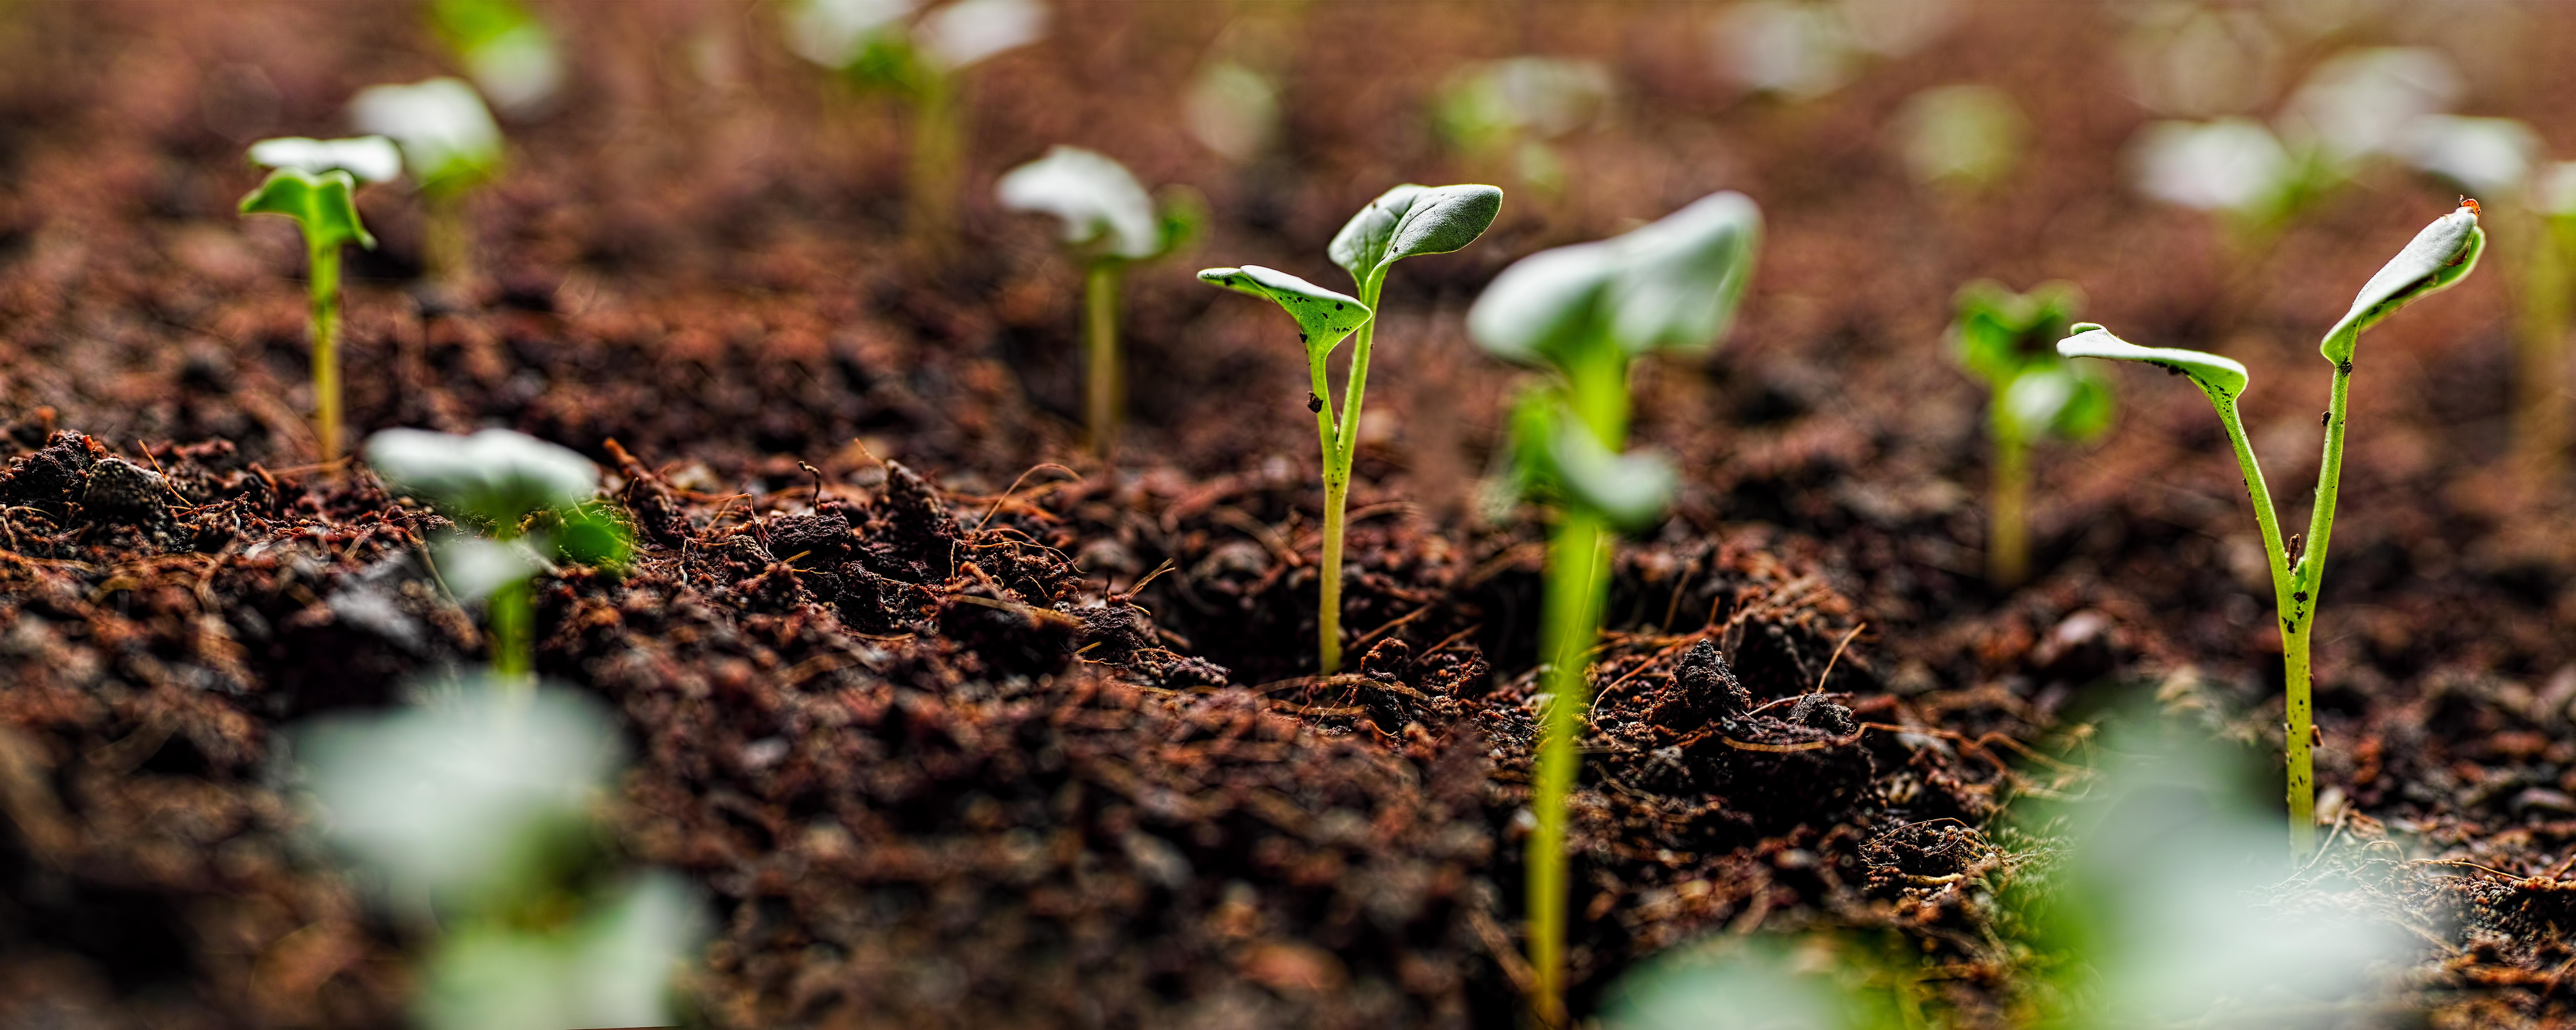 Seedlings from the soil